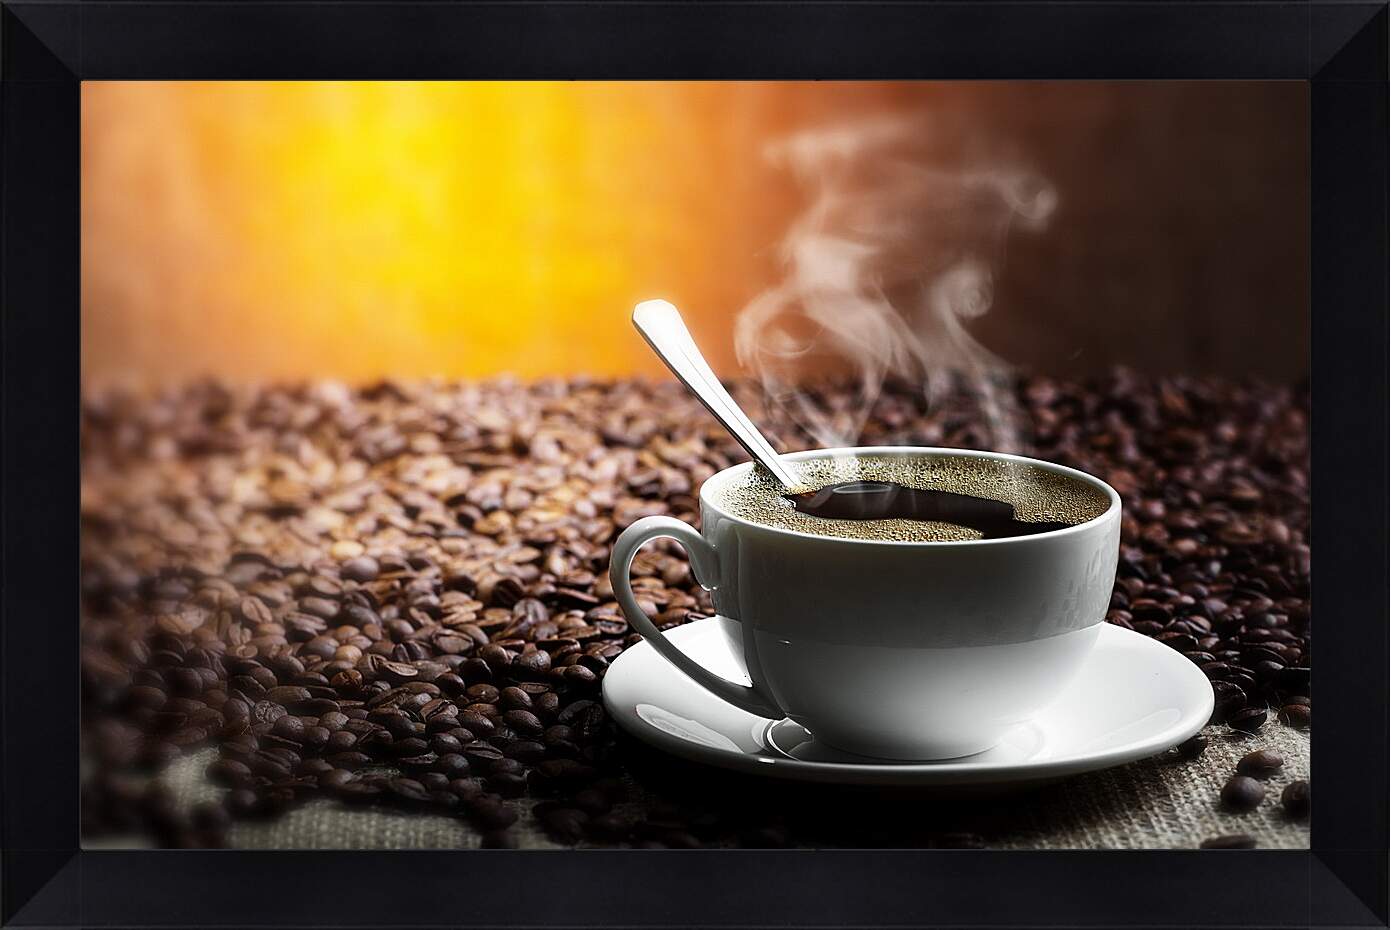 Картина в раме - Горячая чашка кофе на фоне кофейных зёрен